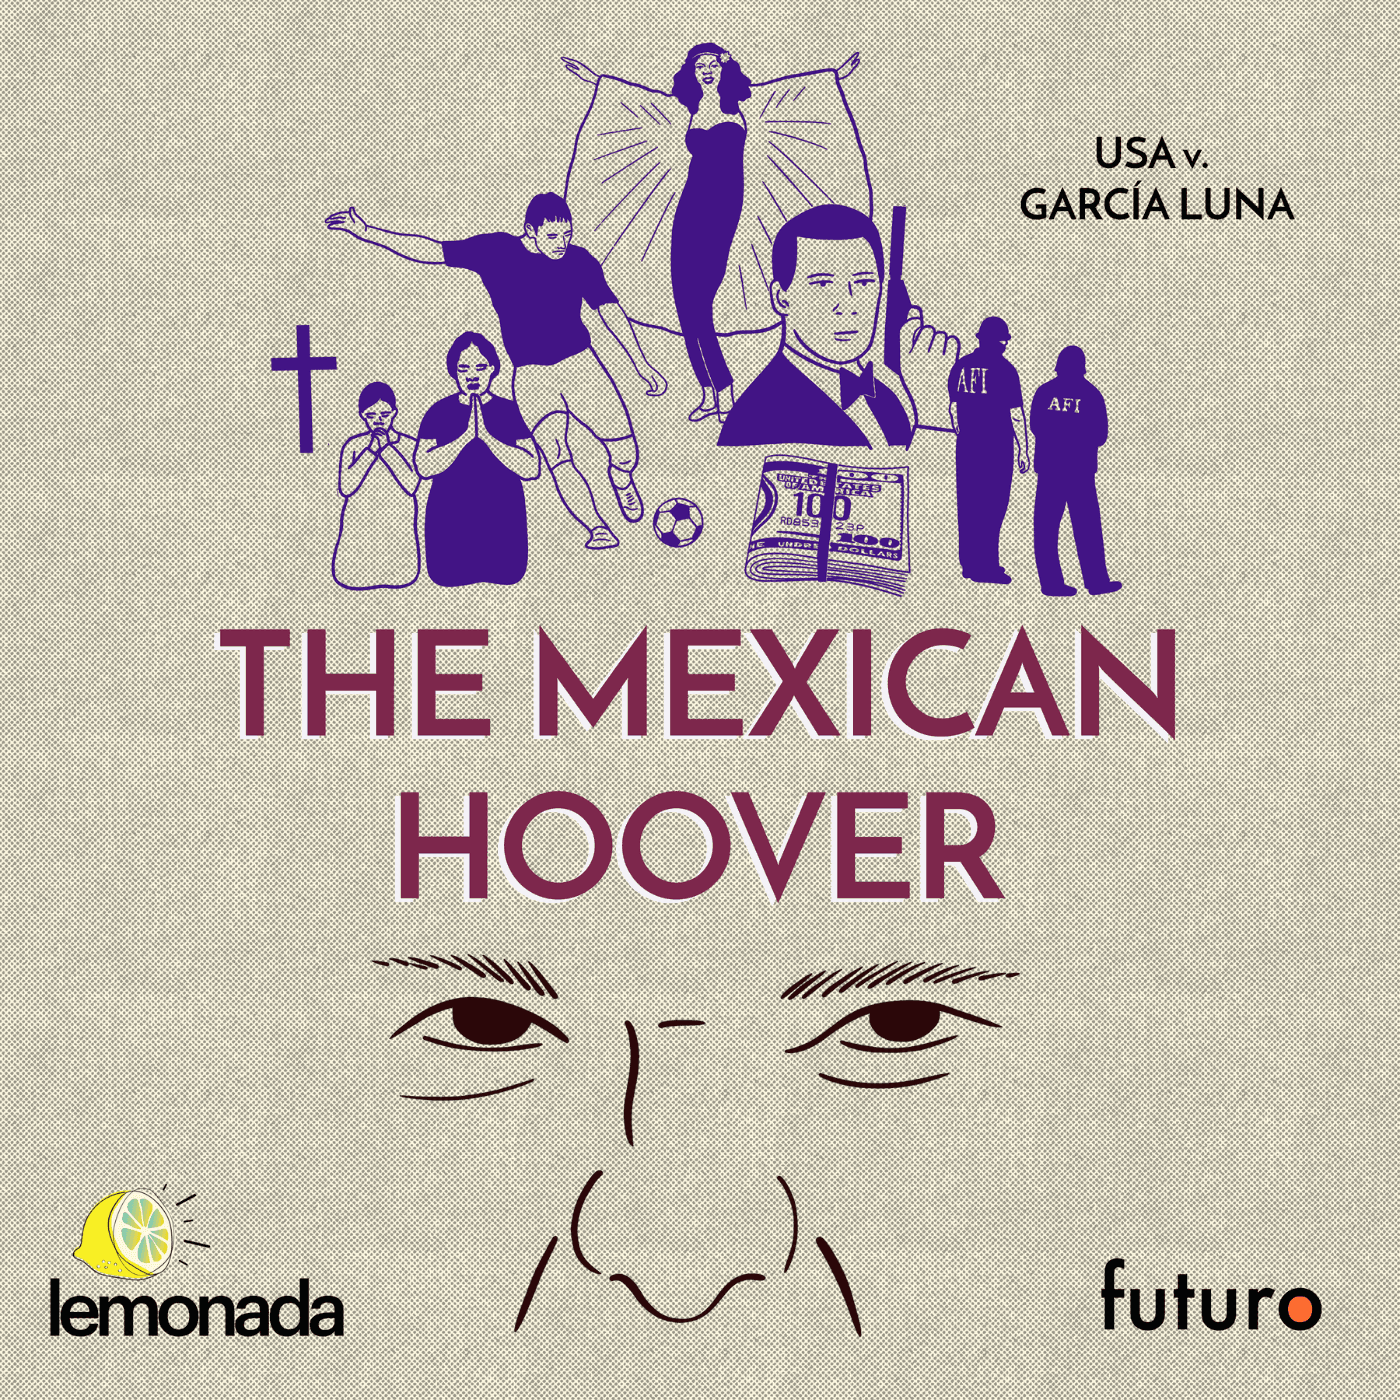 Thumbnail for "USA v. García Luna: Episode 2 ‘The Mexican Hoover’".